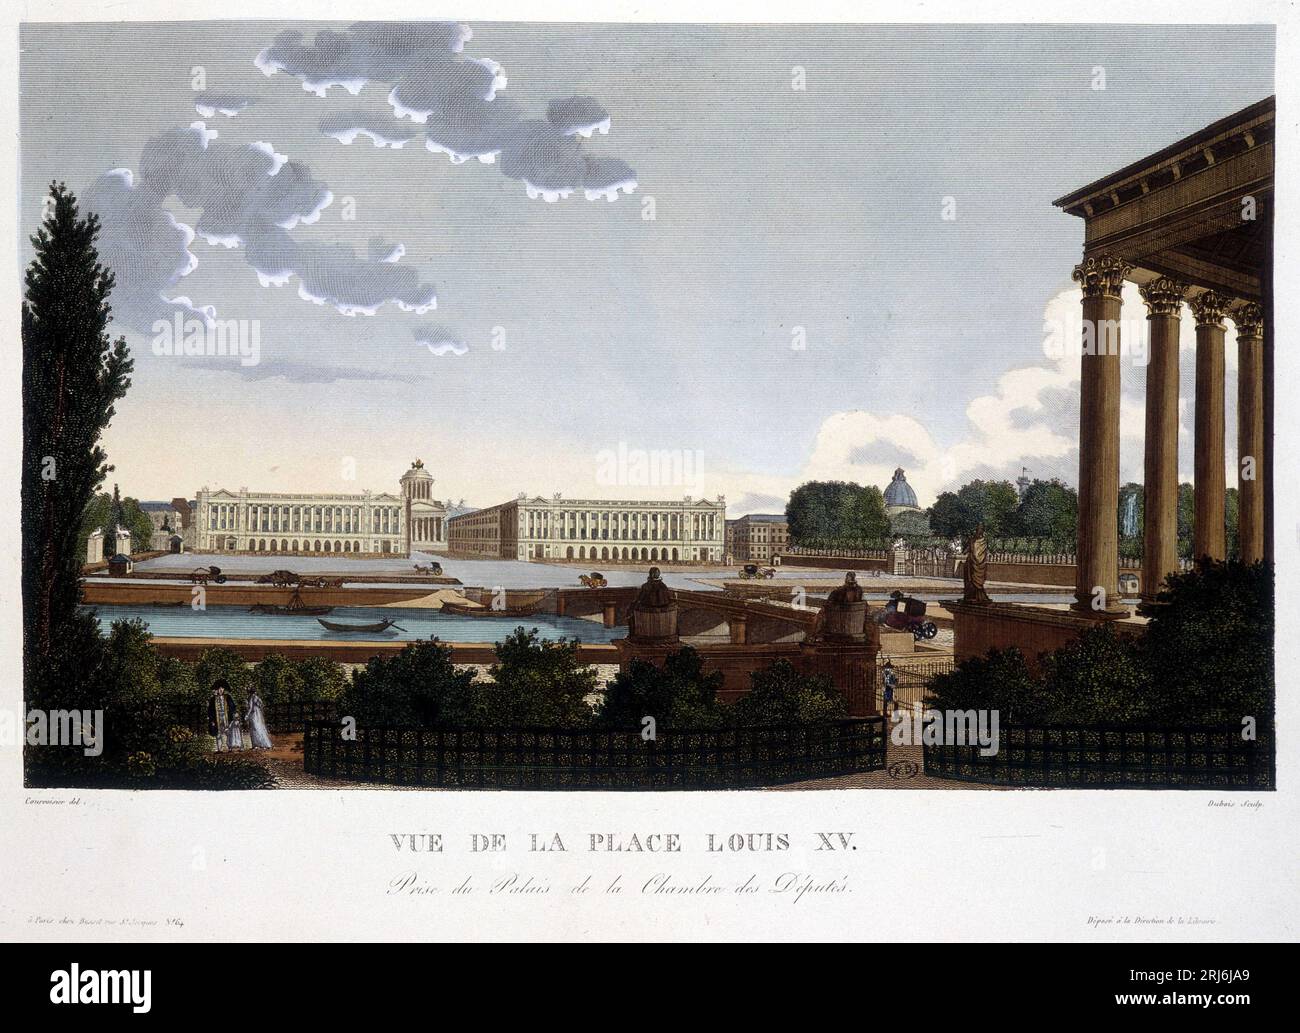 Vue de la Place Louis XV - Paris par Courvoisier, 1827 Stockfoto